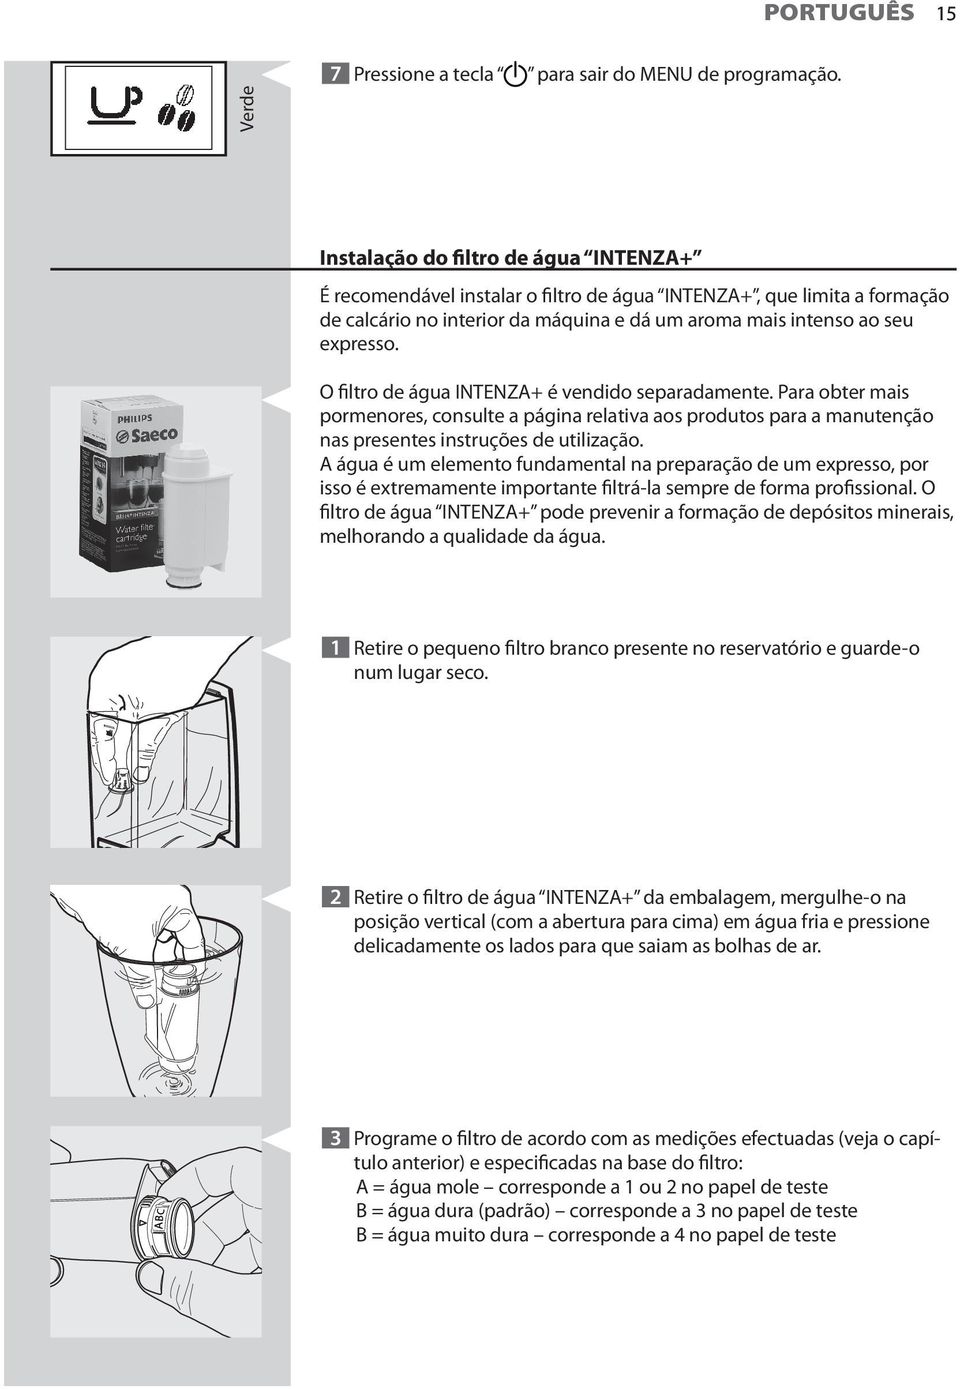 O filtro de água INTENZA+ é vendido separadamente. Para obter mais pormenores, consulte a página relativa aos produtos para a manutenção nas presentes instruções de utilização.